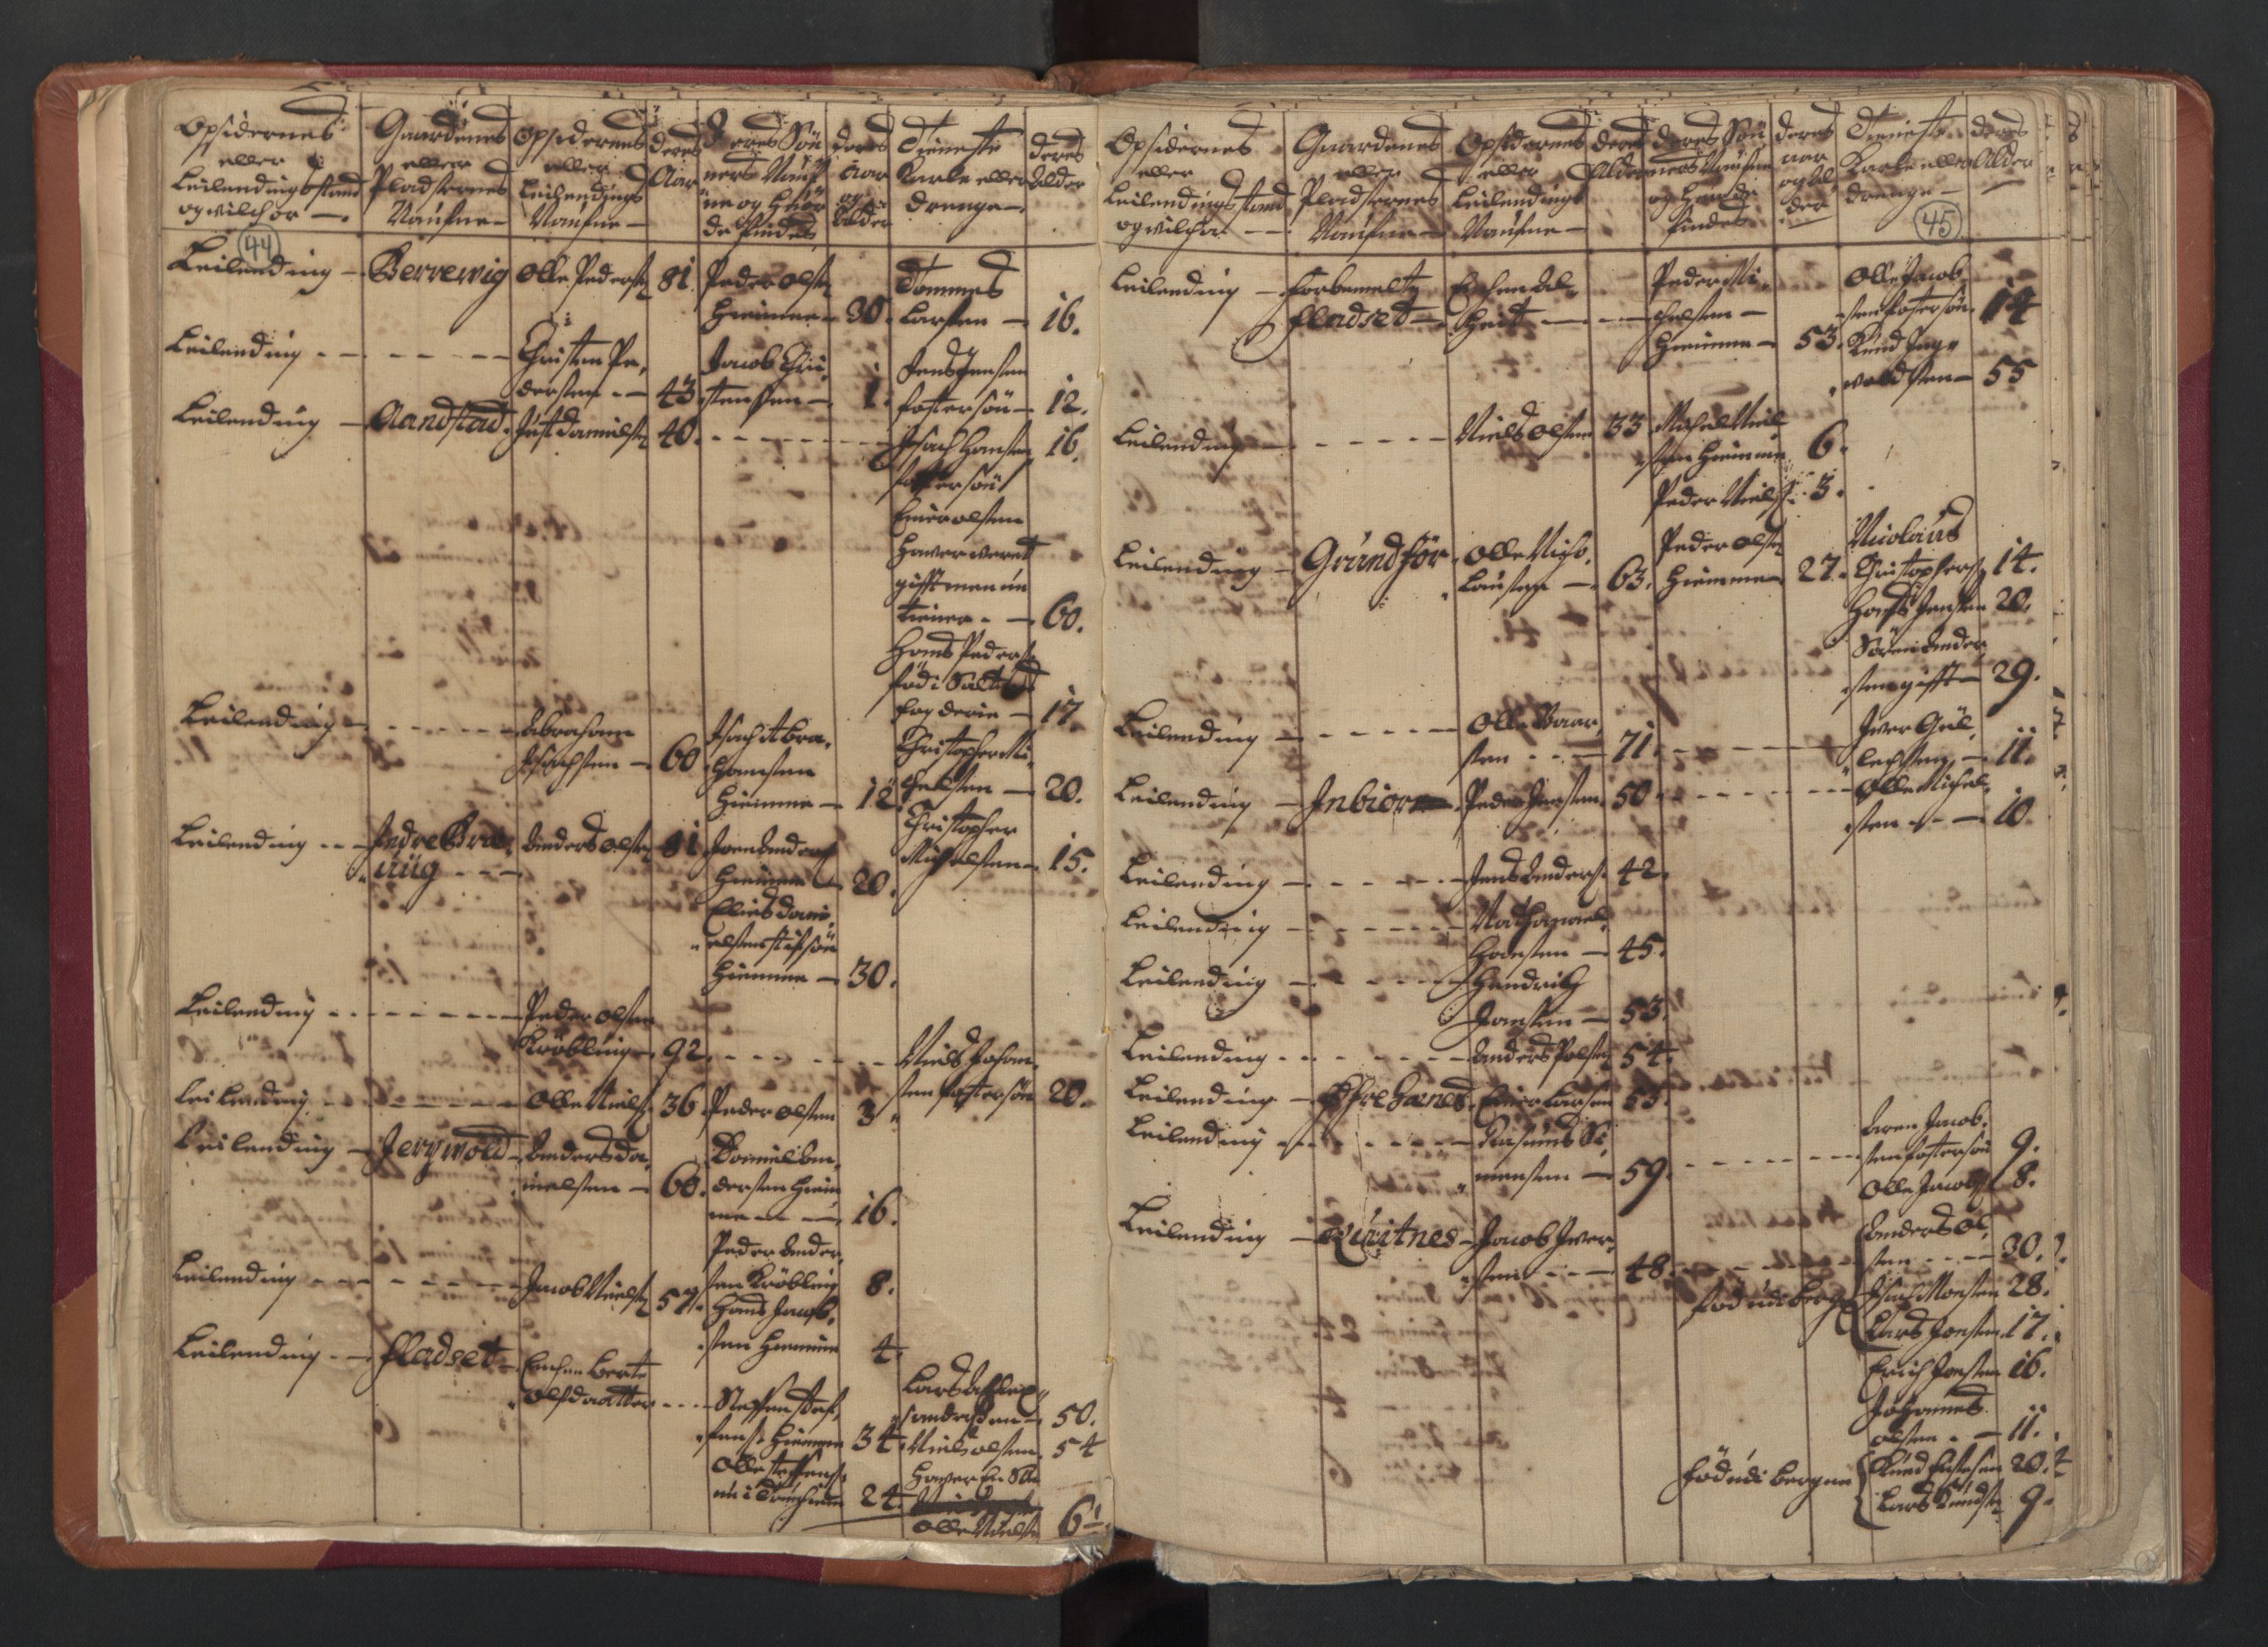 RA, Census (manntall) 1701, no. 18: Vesterålen, Andenes and Lofoten fogderi, 1701, p. 44-45